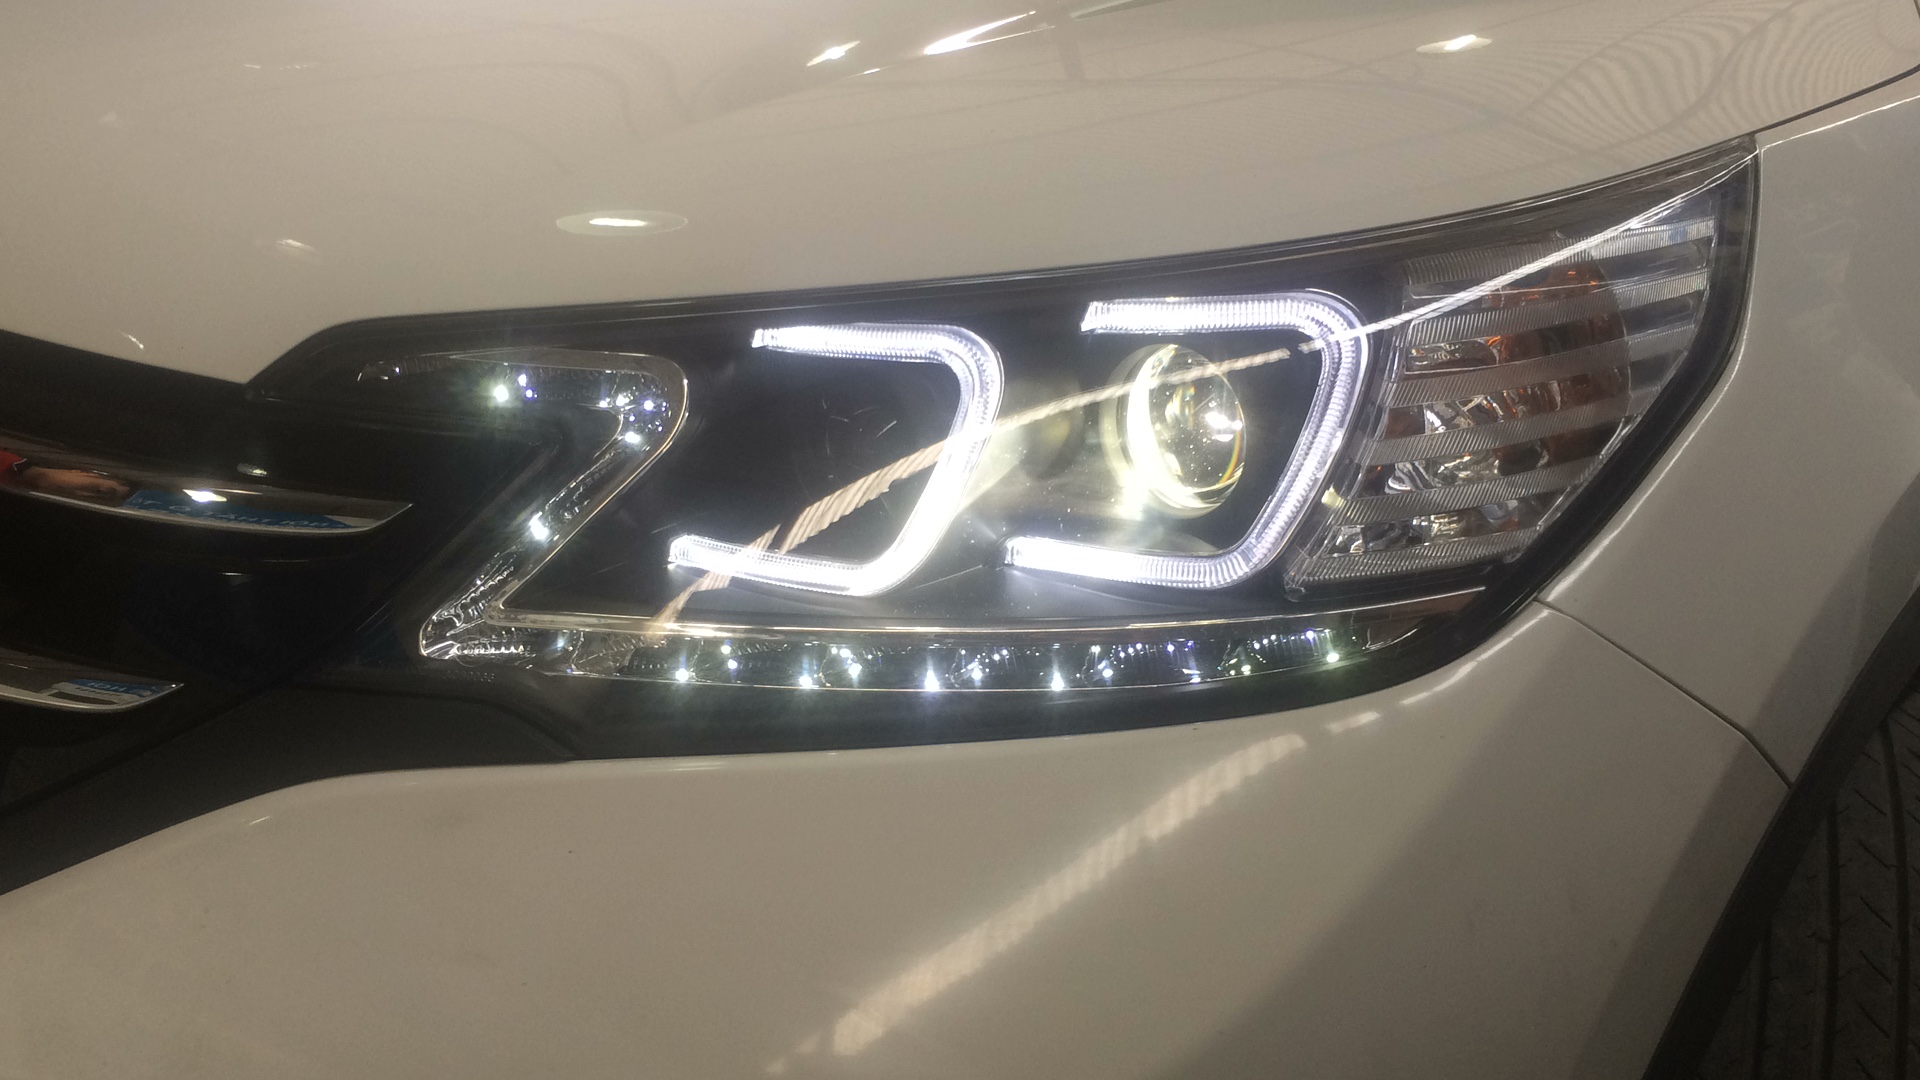 Honda CRV 2014 thay đèn nguyên bộ